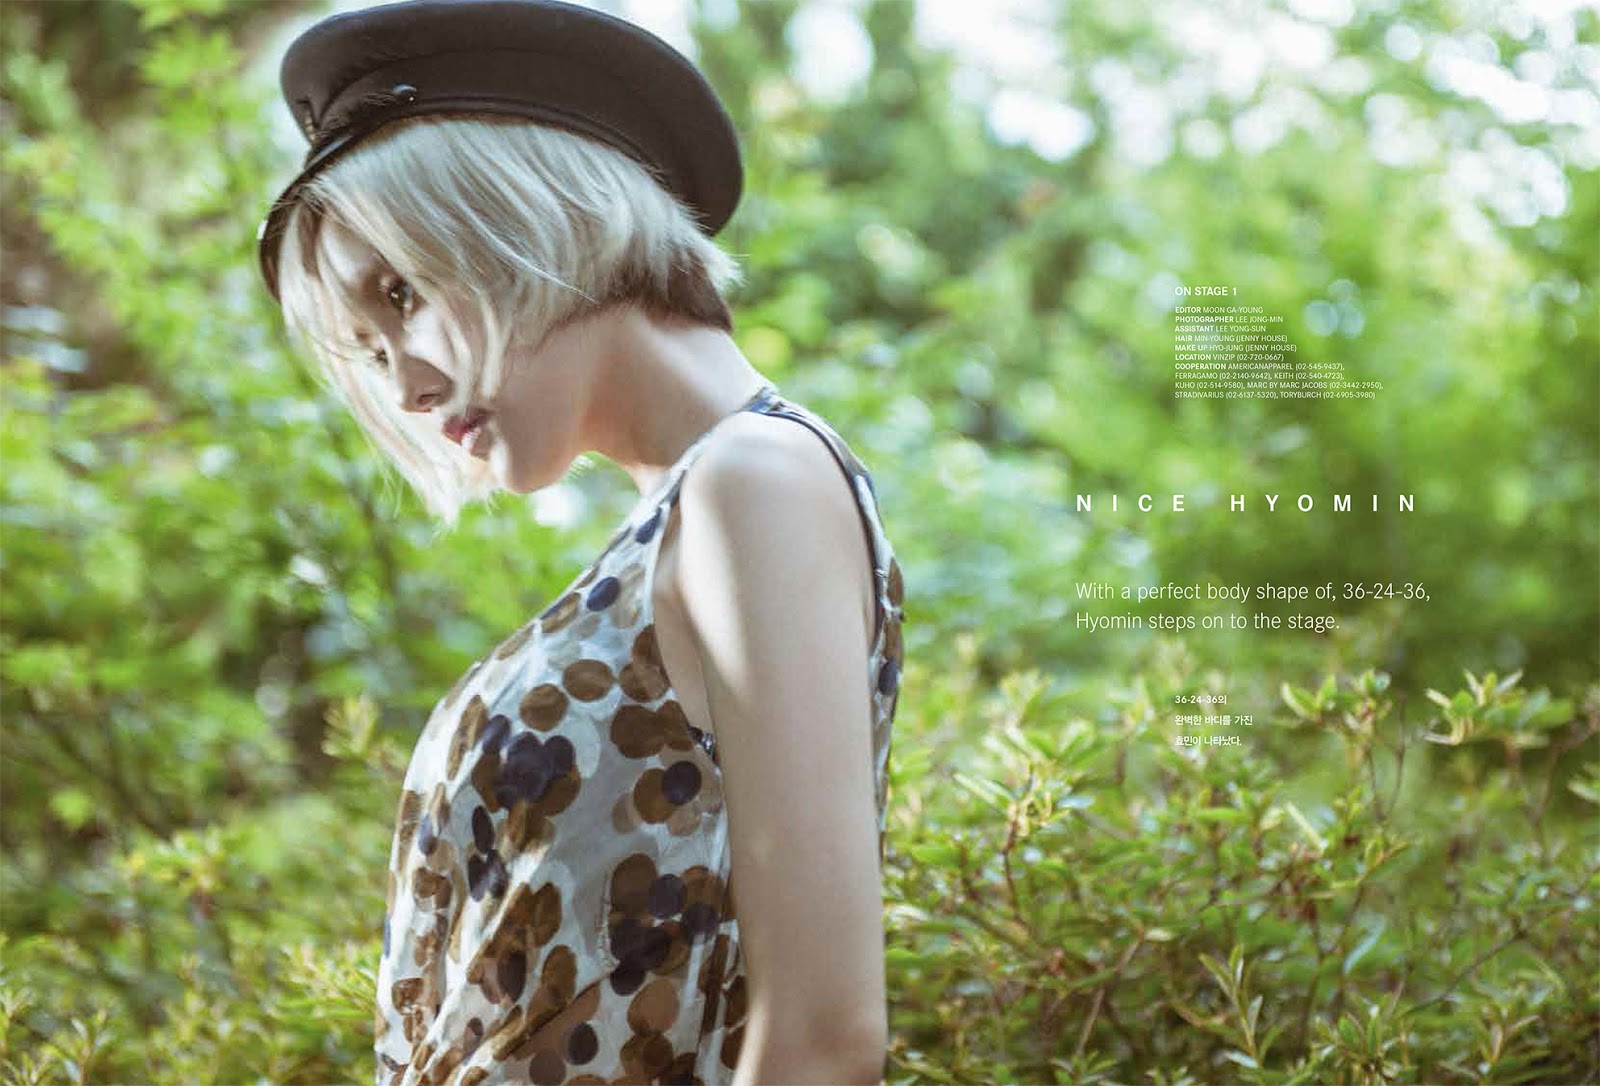 هيومين لمجلة K-wav عدد اغسطس T-ara+hyomin+k-wave+magazine+(4)